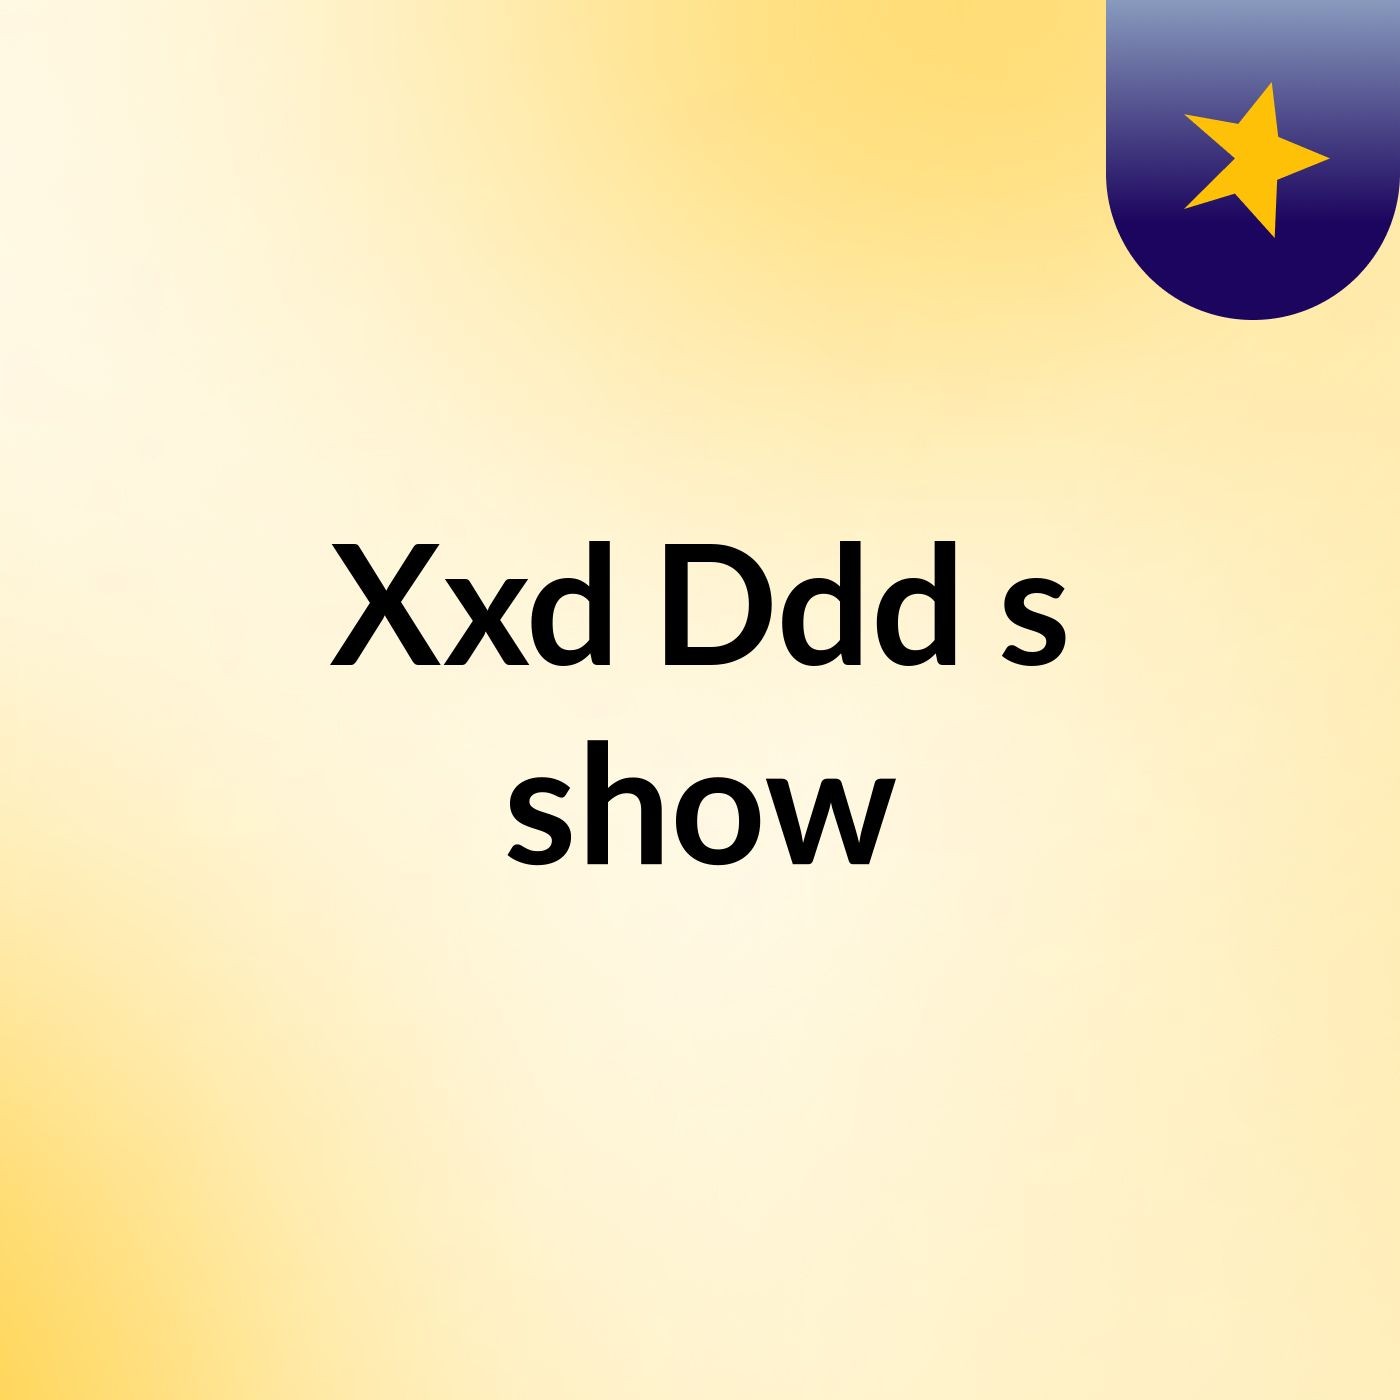 Xxd Ddd's show